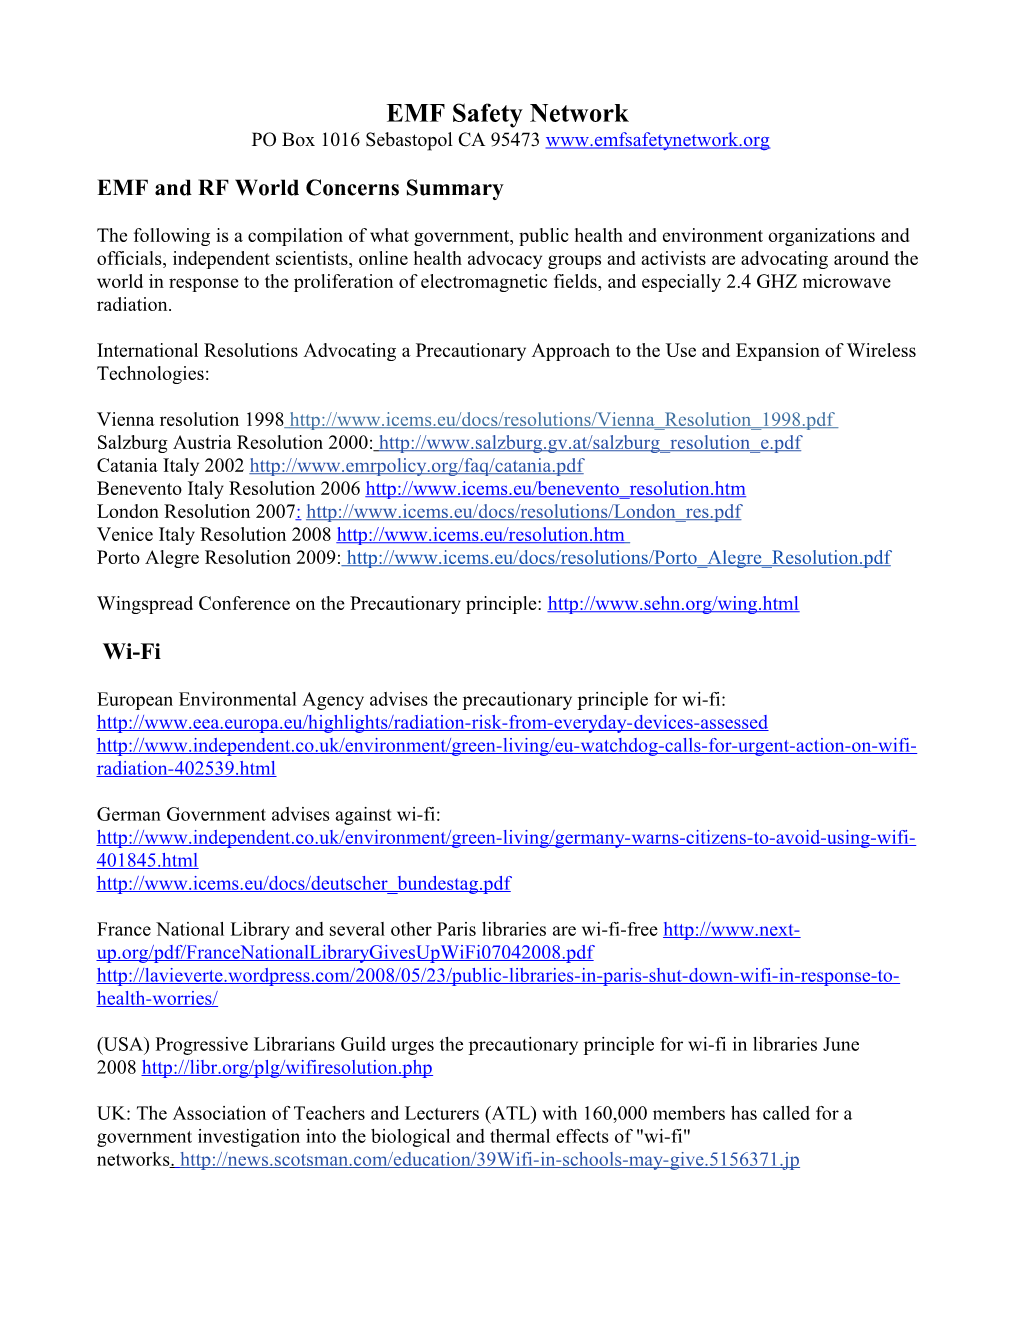 EMF/R World Concerns Summary